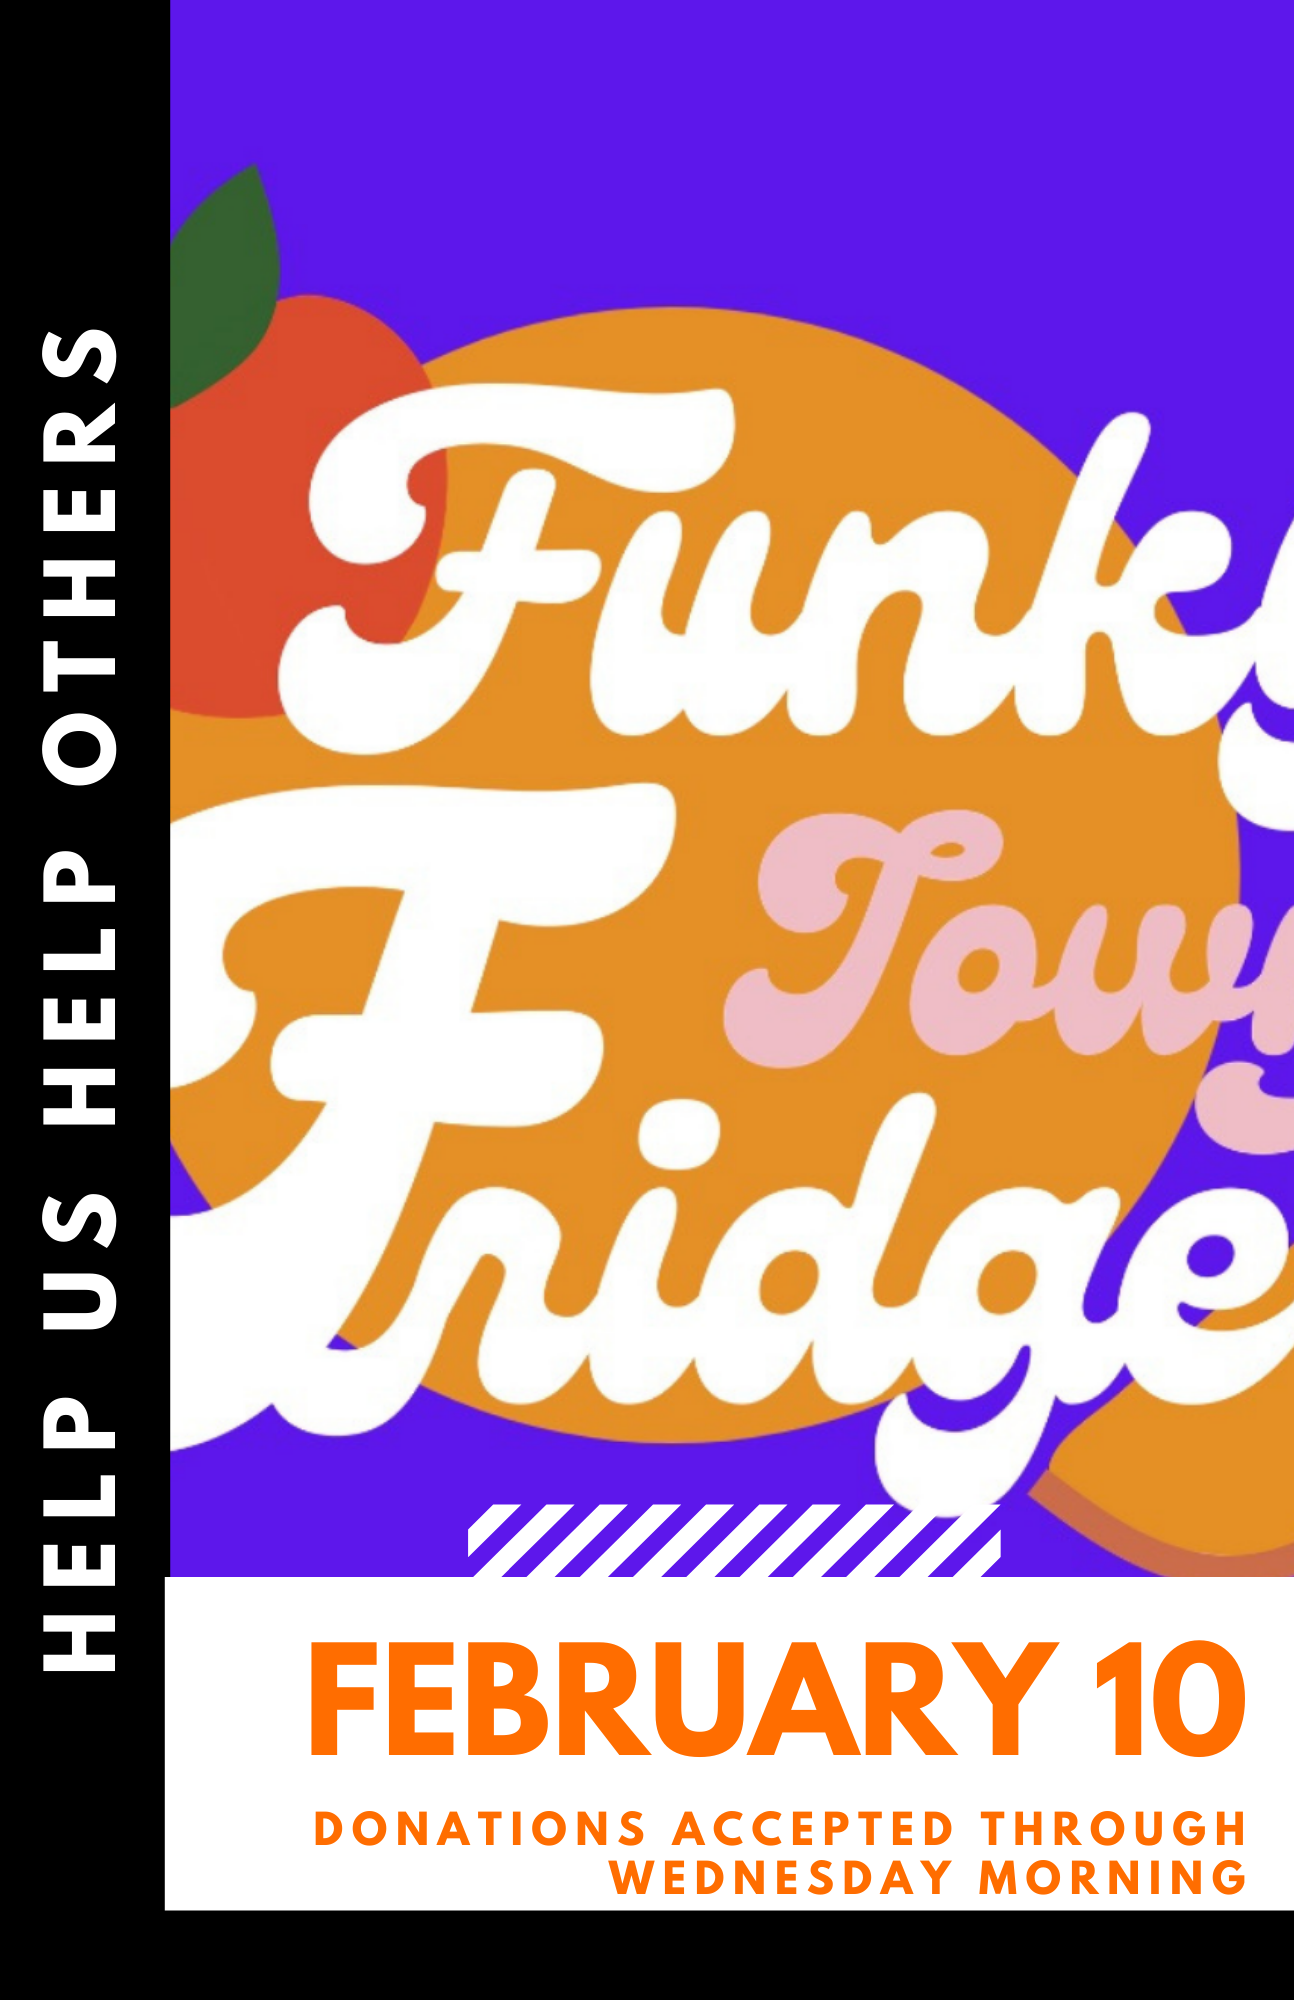 FunkyTown Fridges